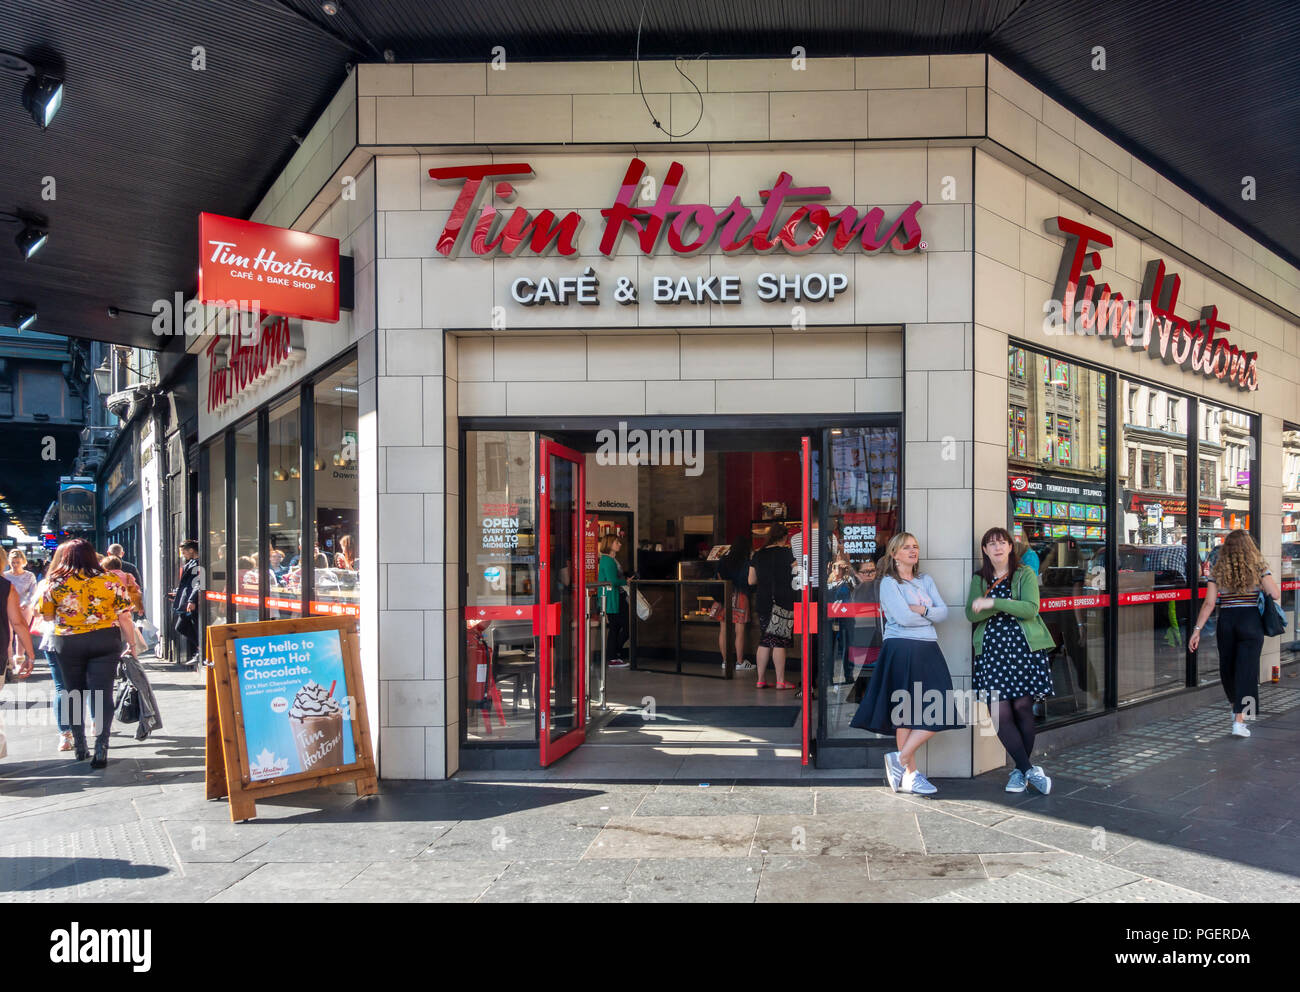 Le café Tim Hortons et Bake shop dans le centre de Glasgow avec les clients à l'intérieur de la boutique et les piétons / shoppers sur la chaussée à l'extérieur. L'Écosse, au Royaume-Uni. Banque D'Images